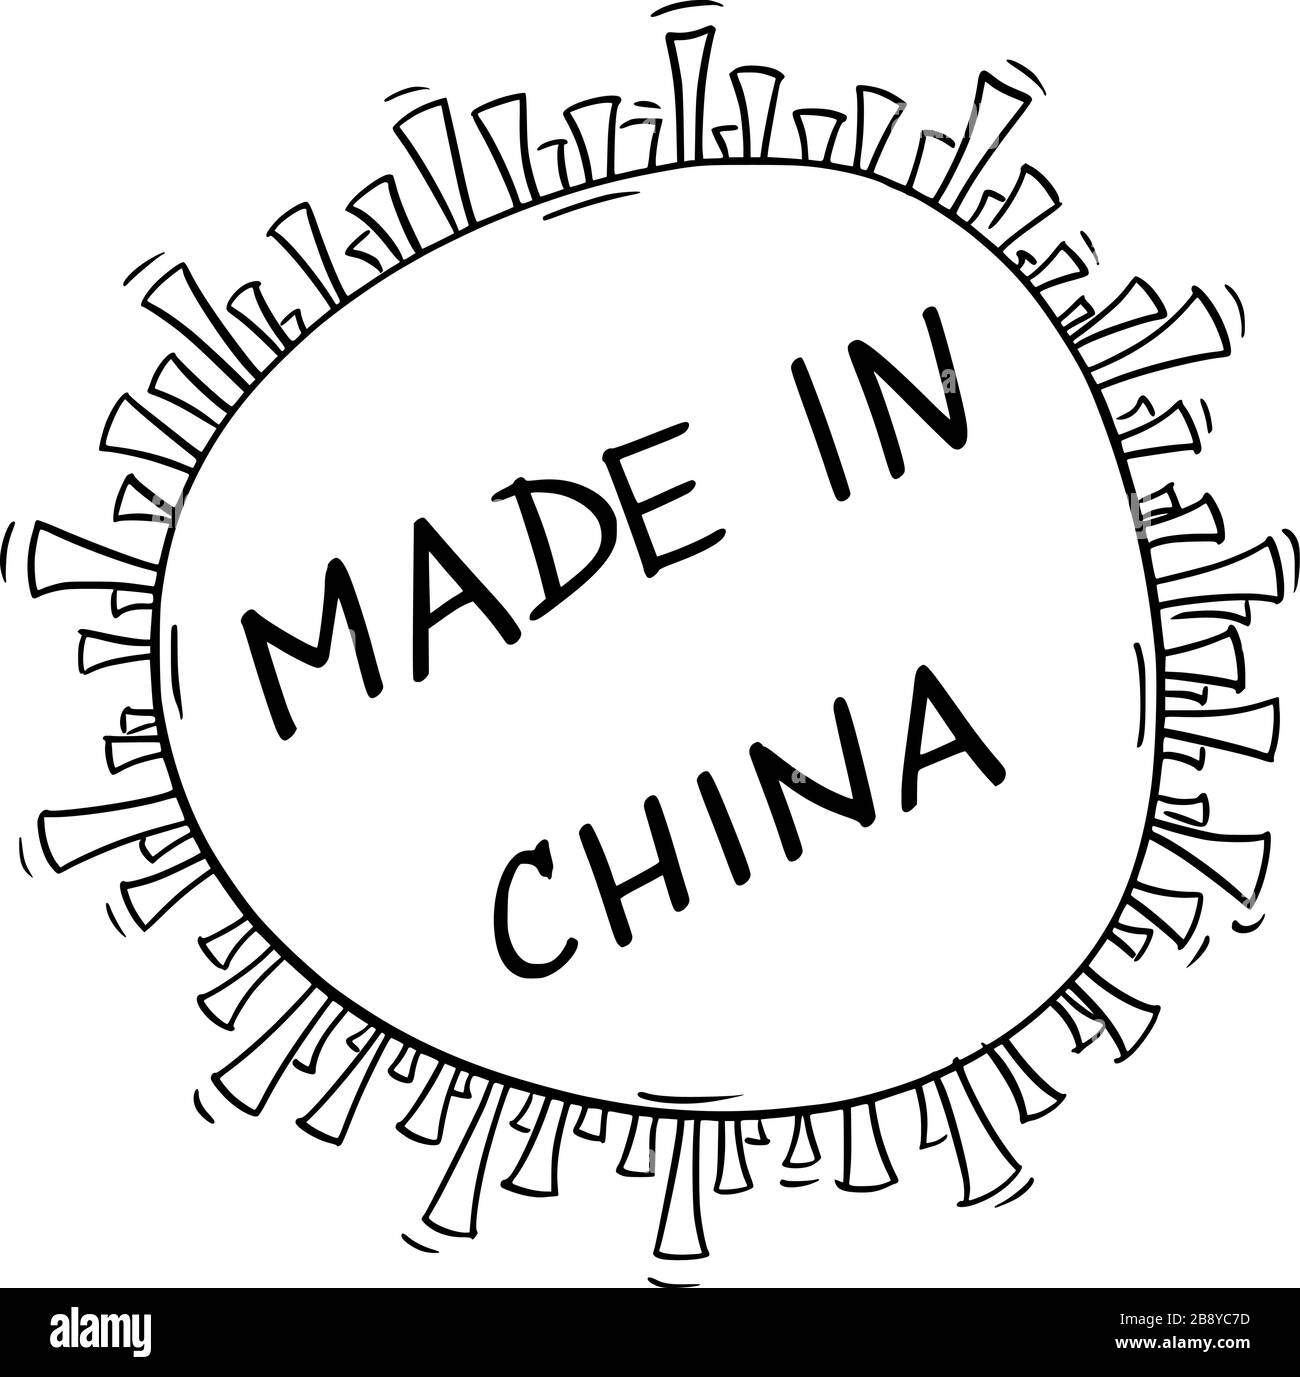 Vektor-Cartoon-Zeichnung konzeptionelle Abbildung des Virus, Coronavirus covid-19 mit Made in china Text, der auf seinen Ursprung in Wuhan, Hubei in China oder der VR China verweist. Stock Vektor